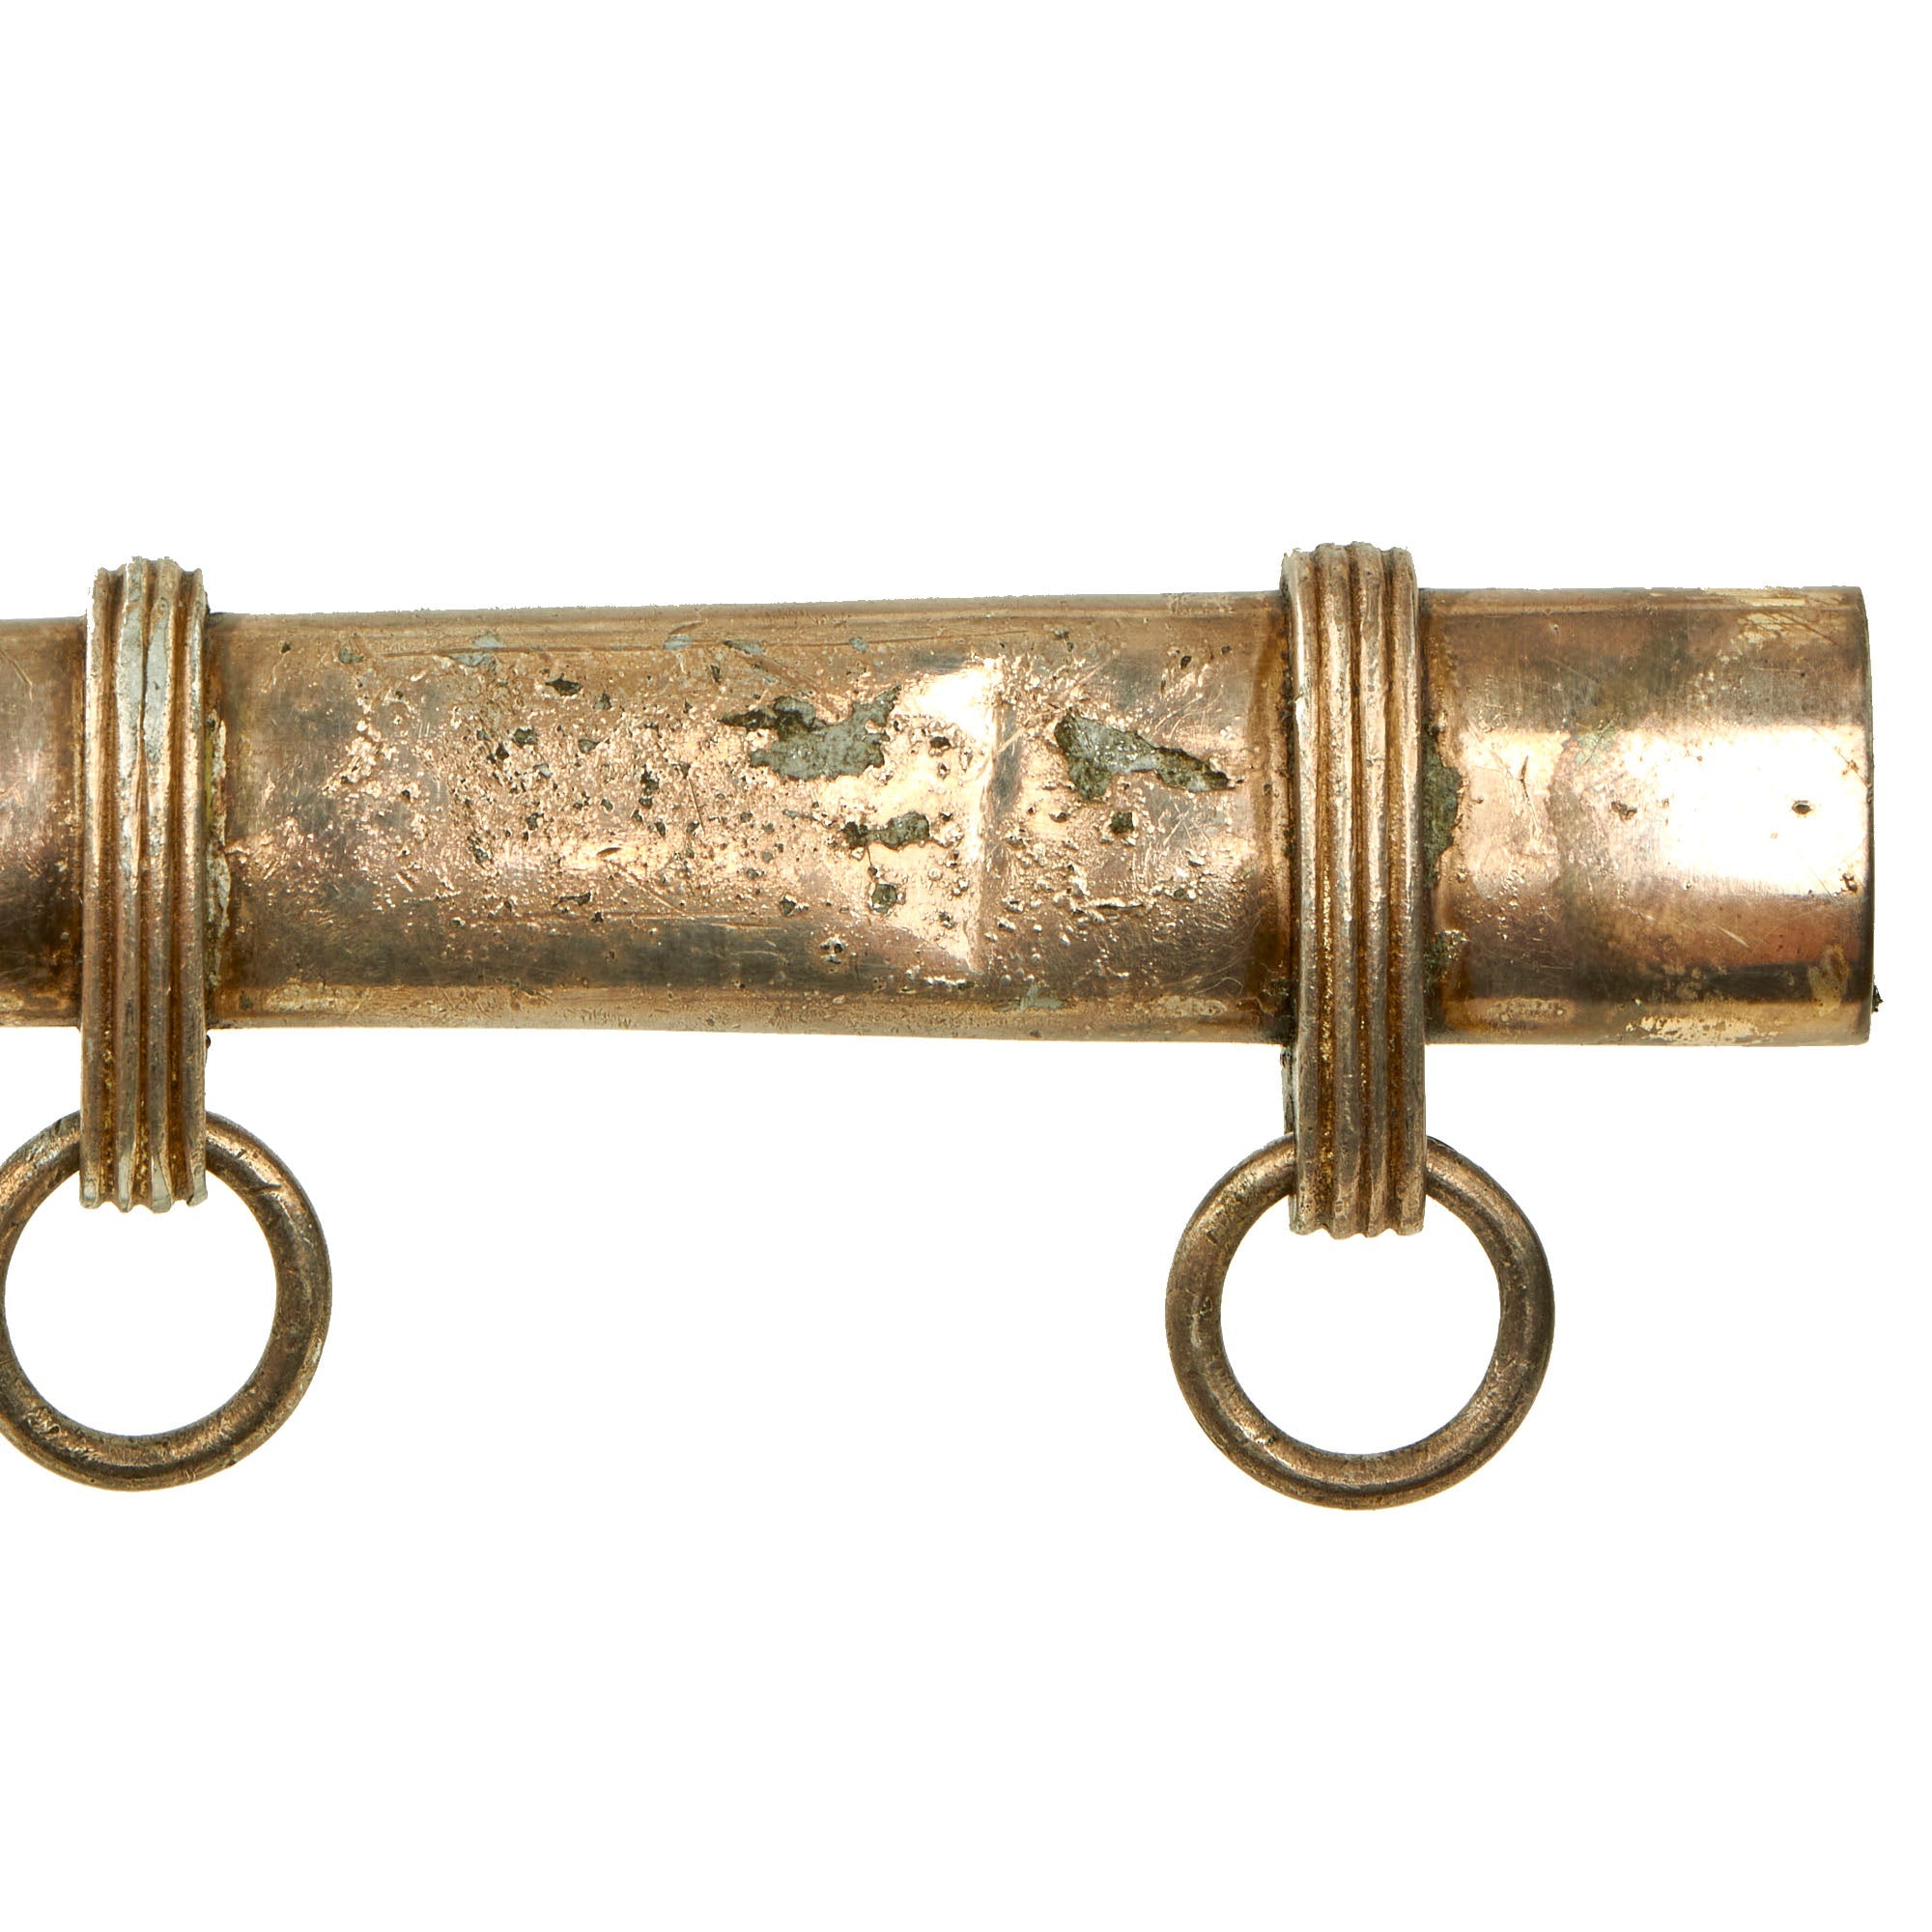 B-1888-2, Stainless Steel Rope Hook, B-1888, Takigen